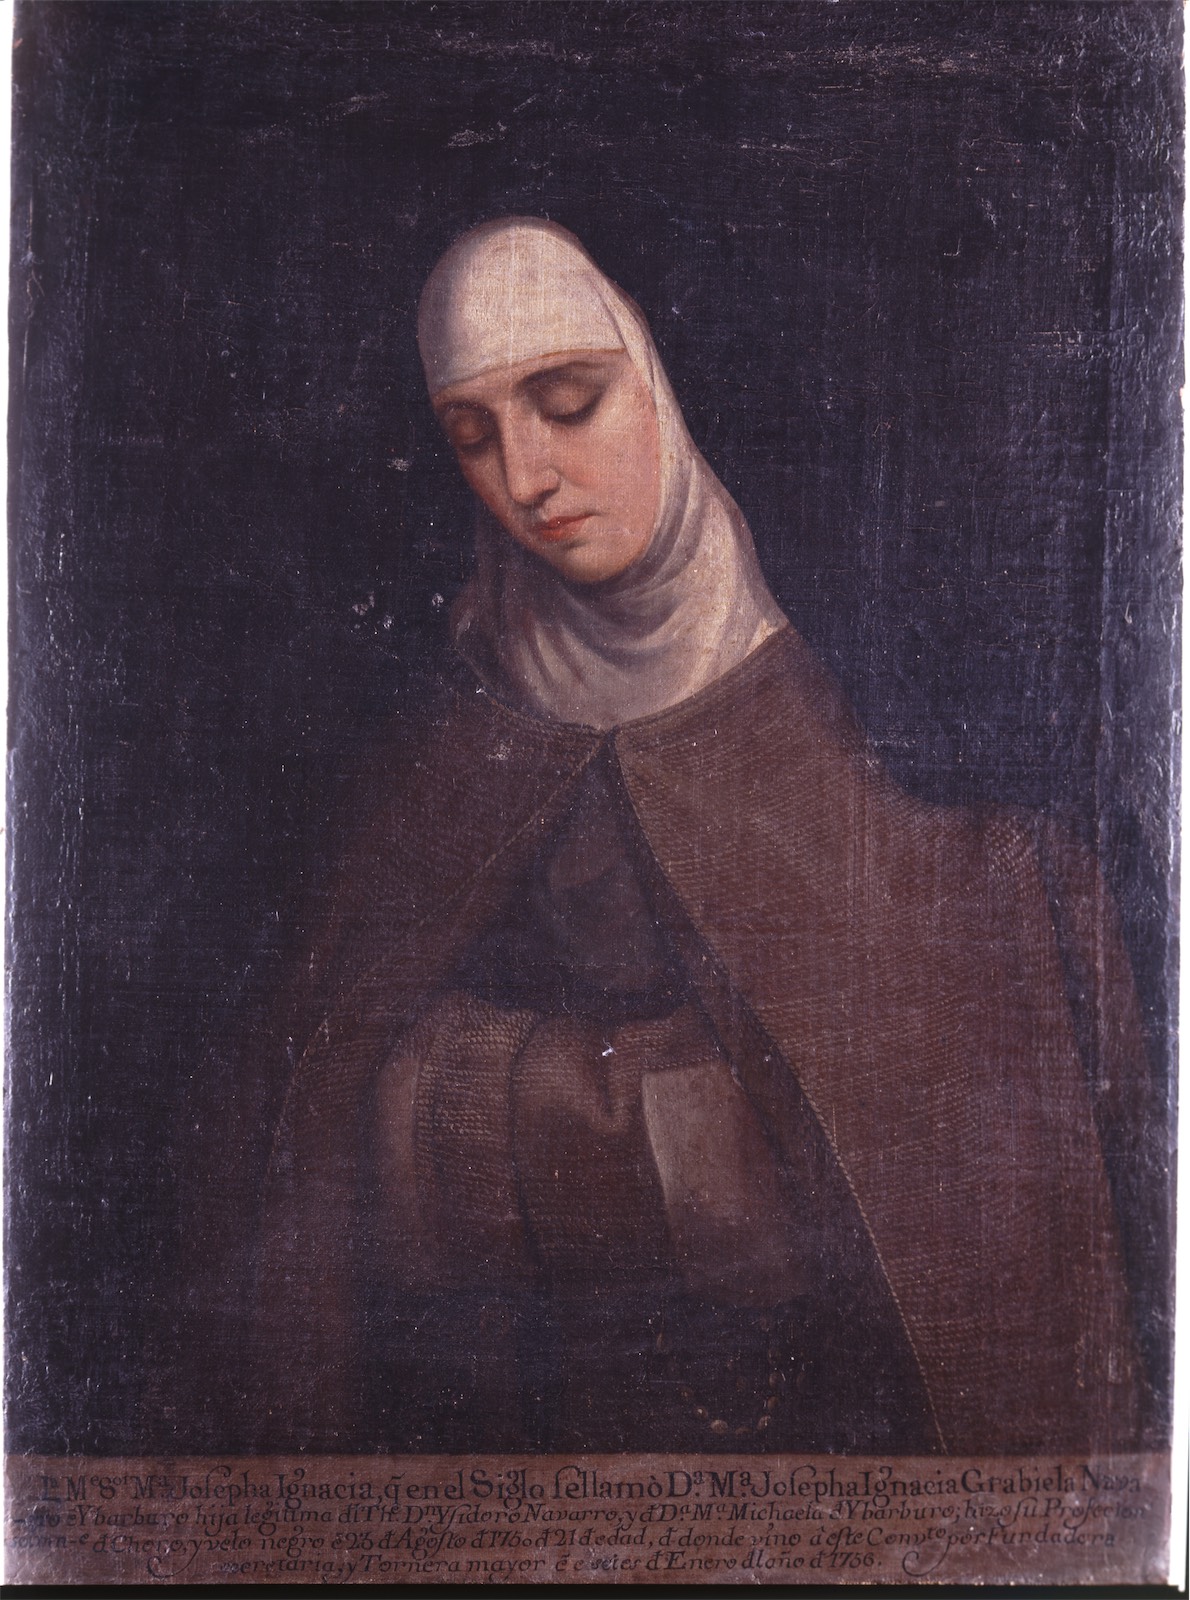 Sor María Josefa Ignacia